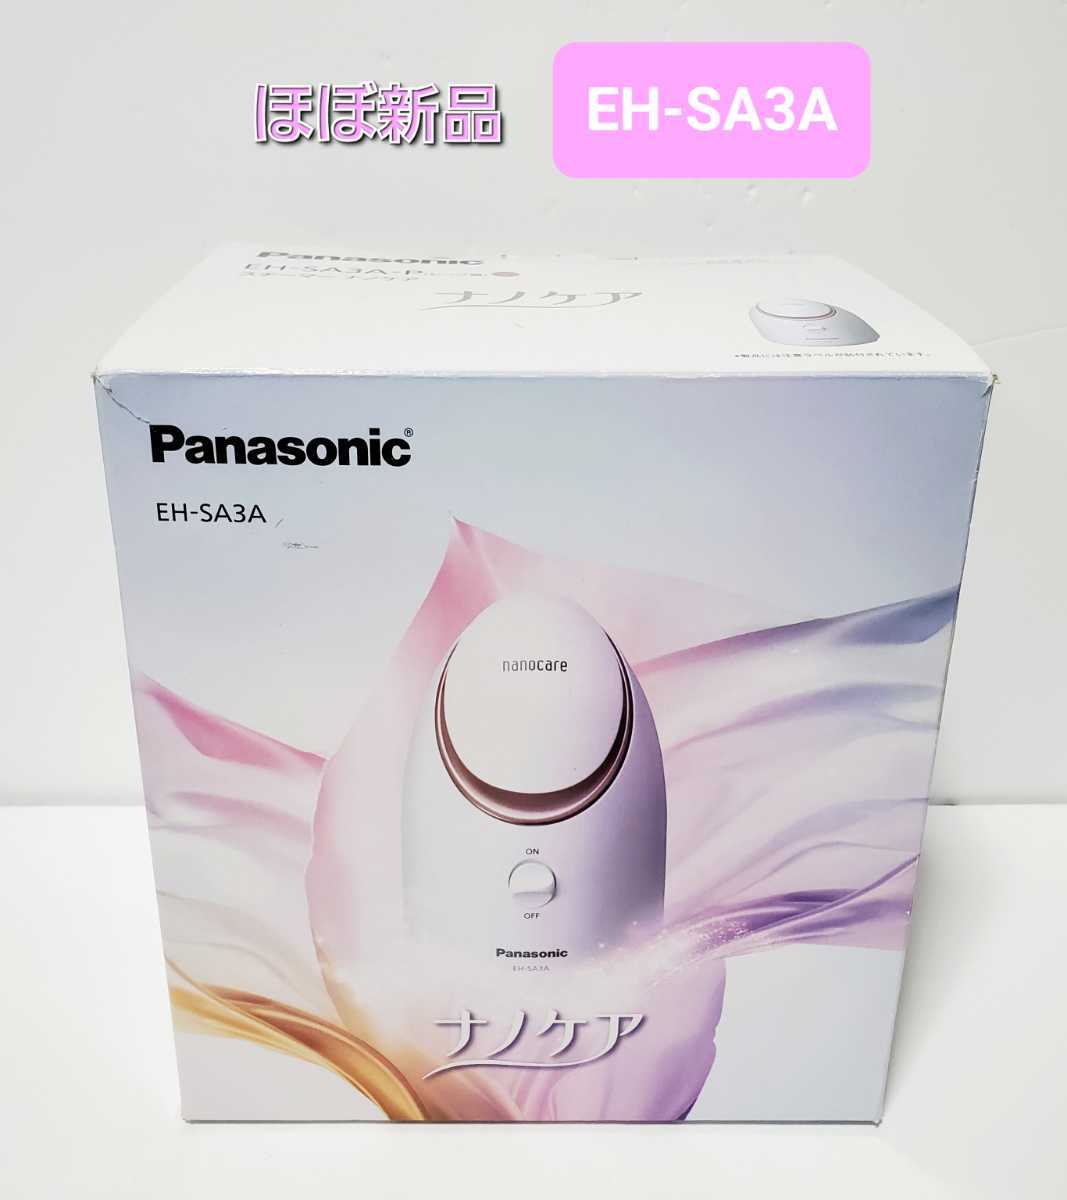 ほぼ新品 パナソニック EH-SA3A-P フェイススチーマー 美顔器 Panasonic フェイスケア ナノケア スチーマーナノケア 